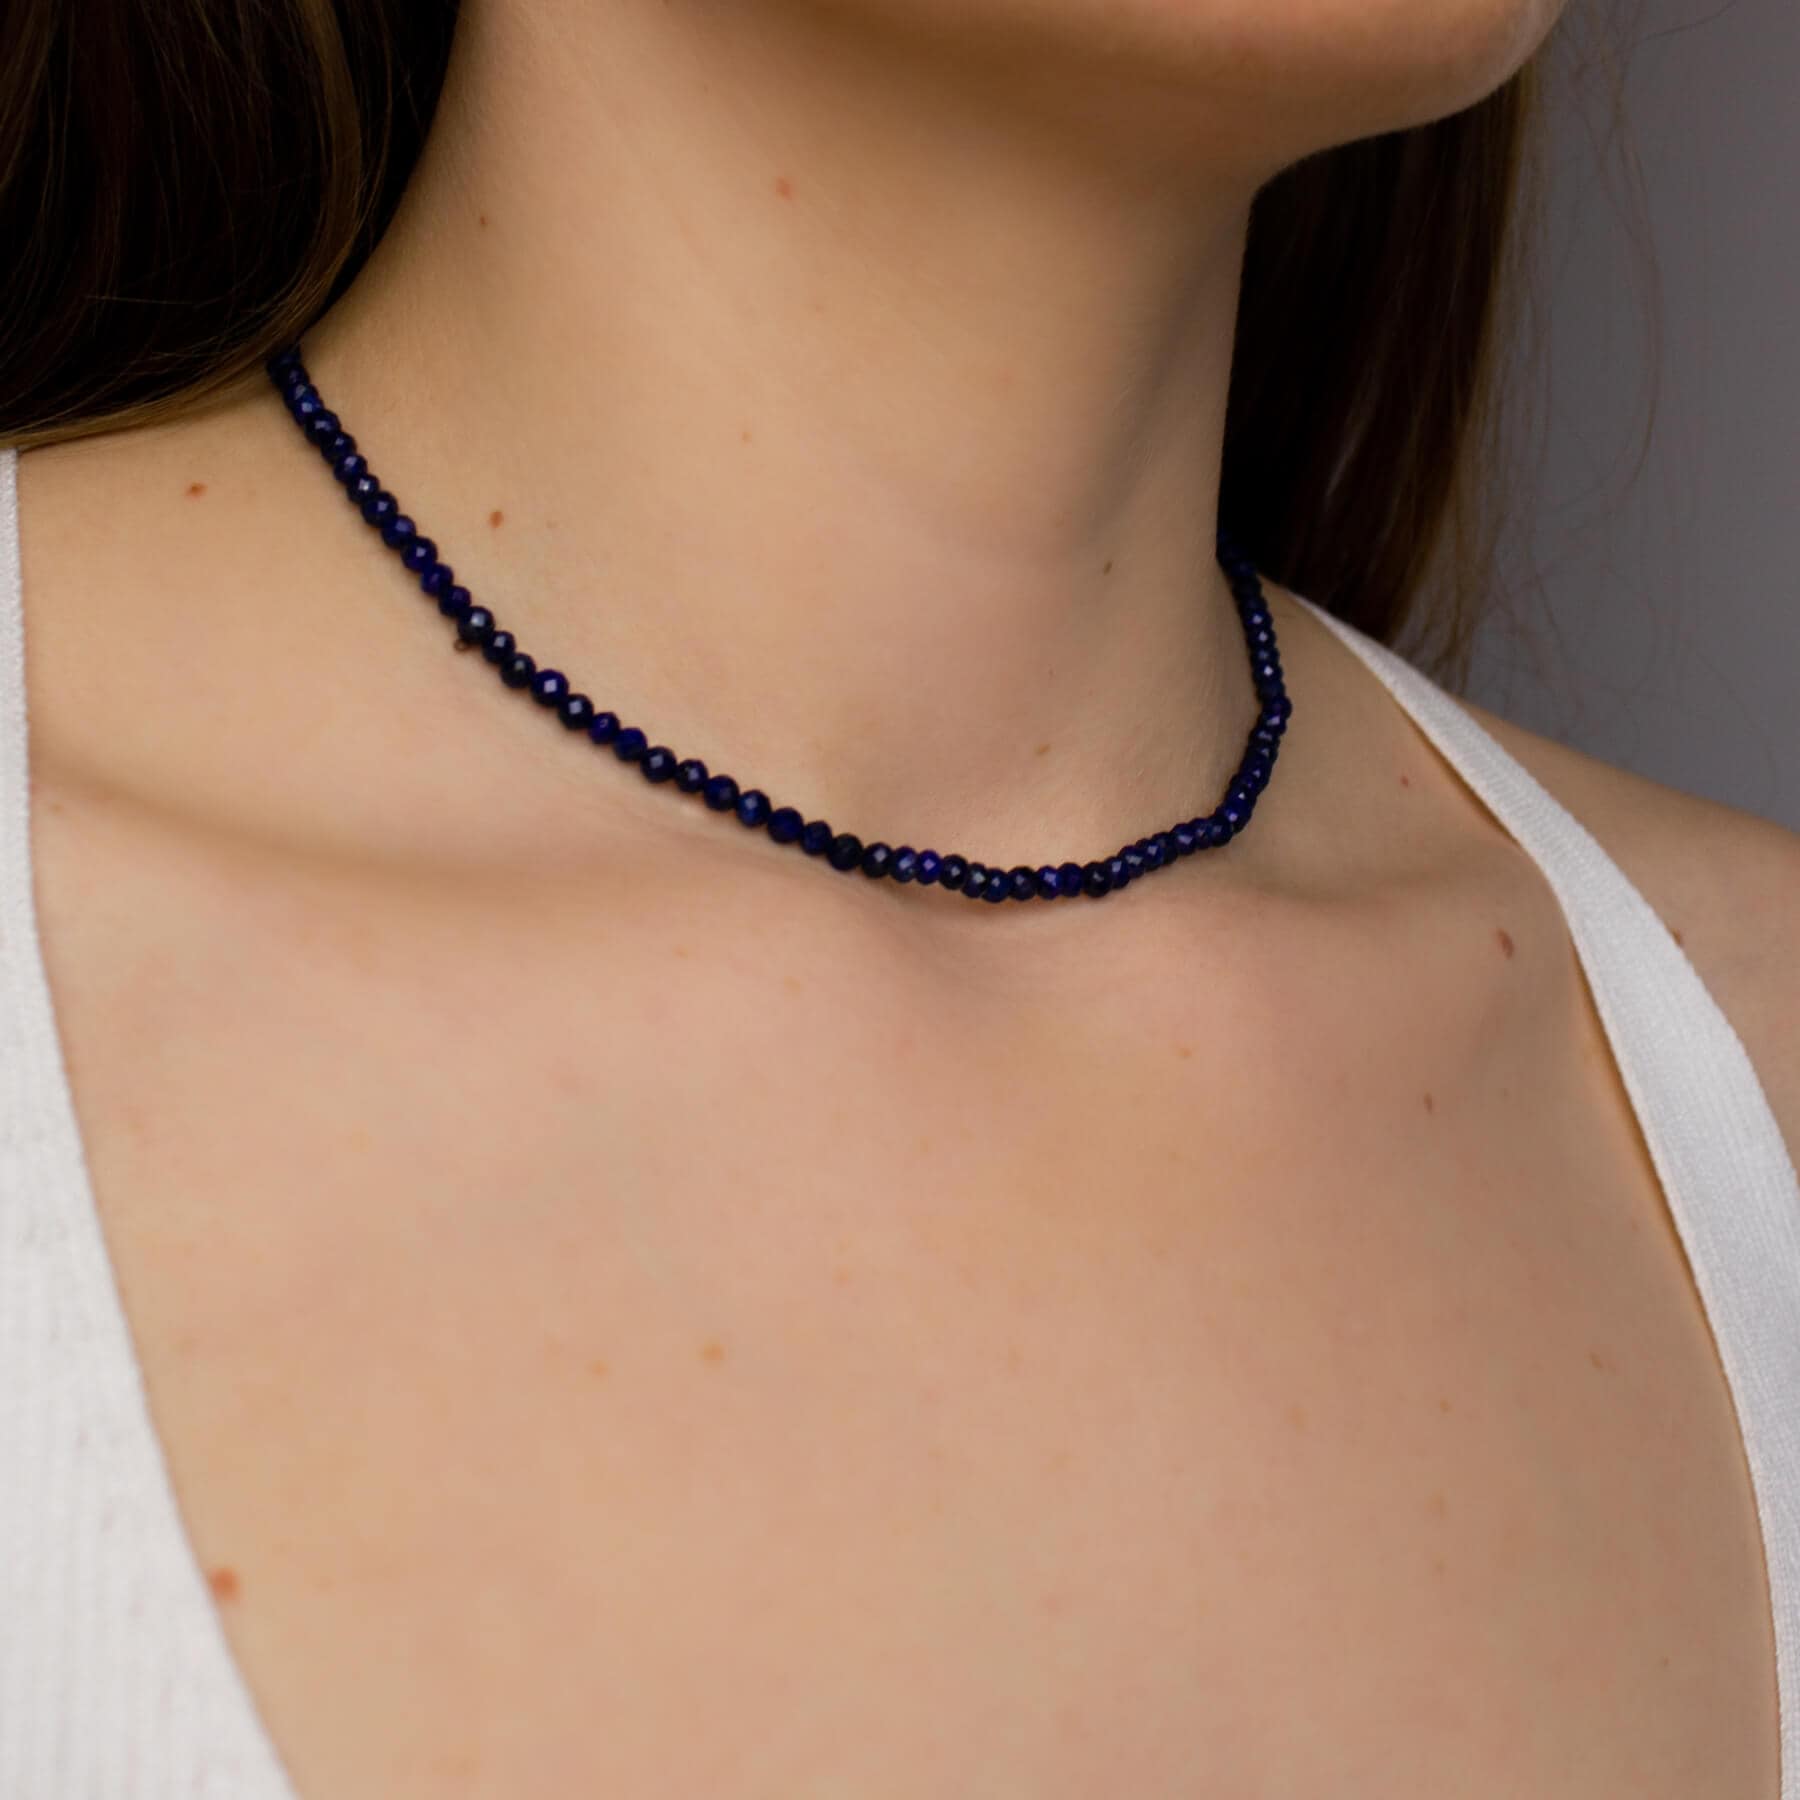 Naszyjnik z kamieni lapis lazuli na modelce.